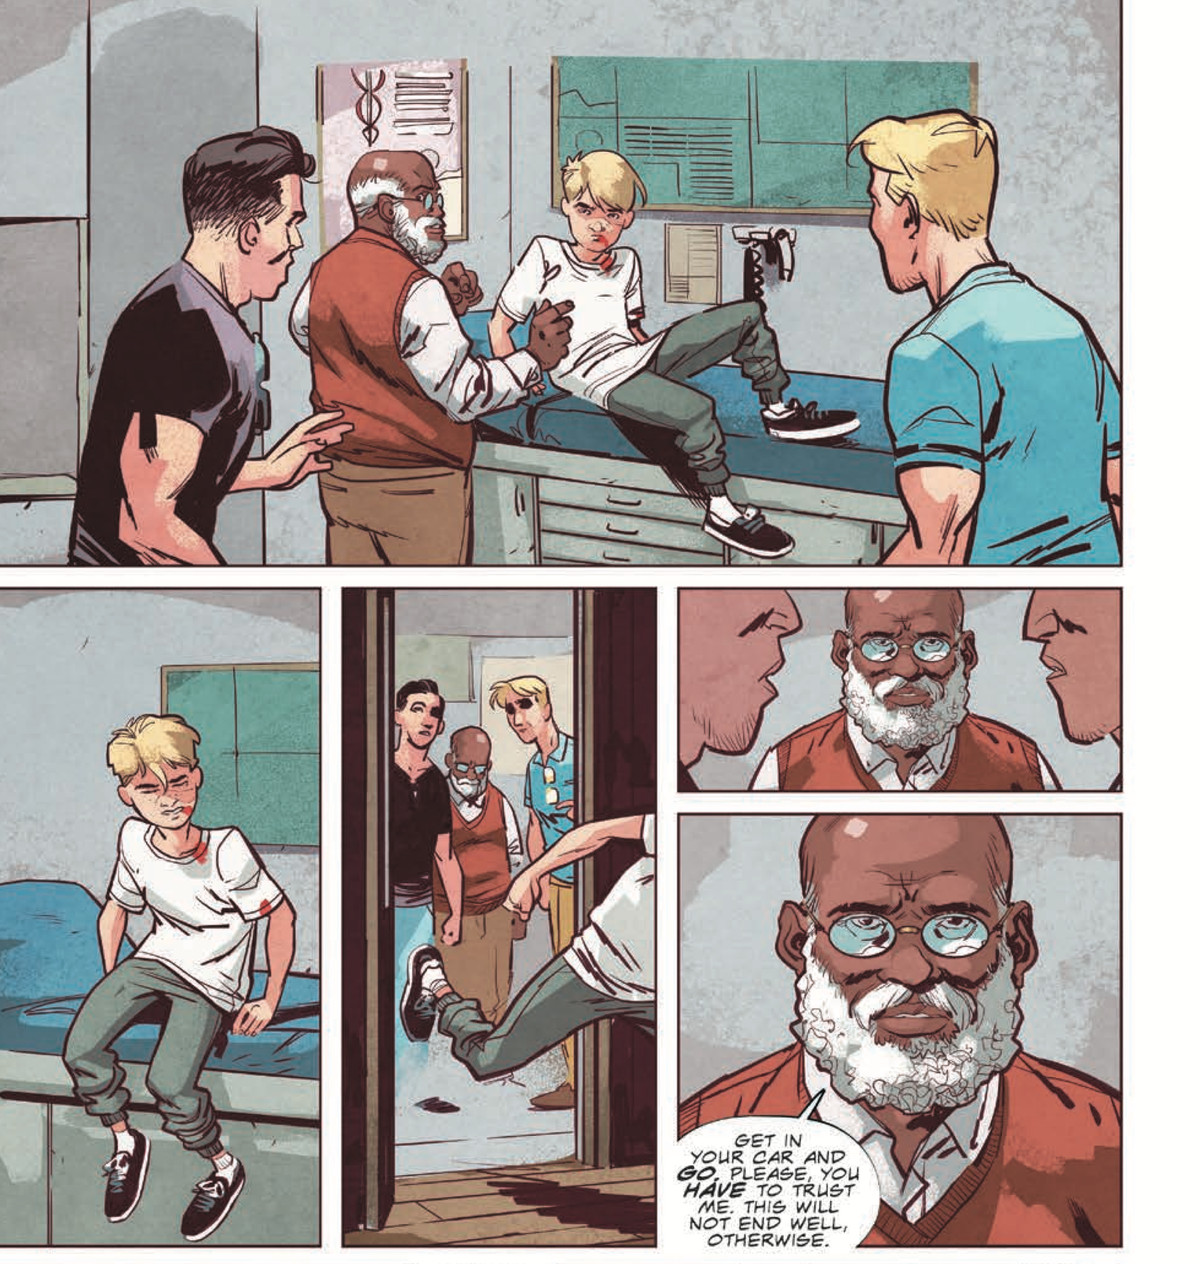 Två män ser en kritiskt skadad tonårspojke sitta upp från en läkares undersökningsbord och springa ut genom dörren. ”Gå in i din bil och gå”, säger läkaren till dem. ”Snälla, du måste lita på mig. Detta kommer inte att sluta bra, annars ”i Stillwater # 1, Image Comics (2020). 